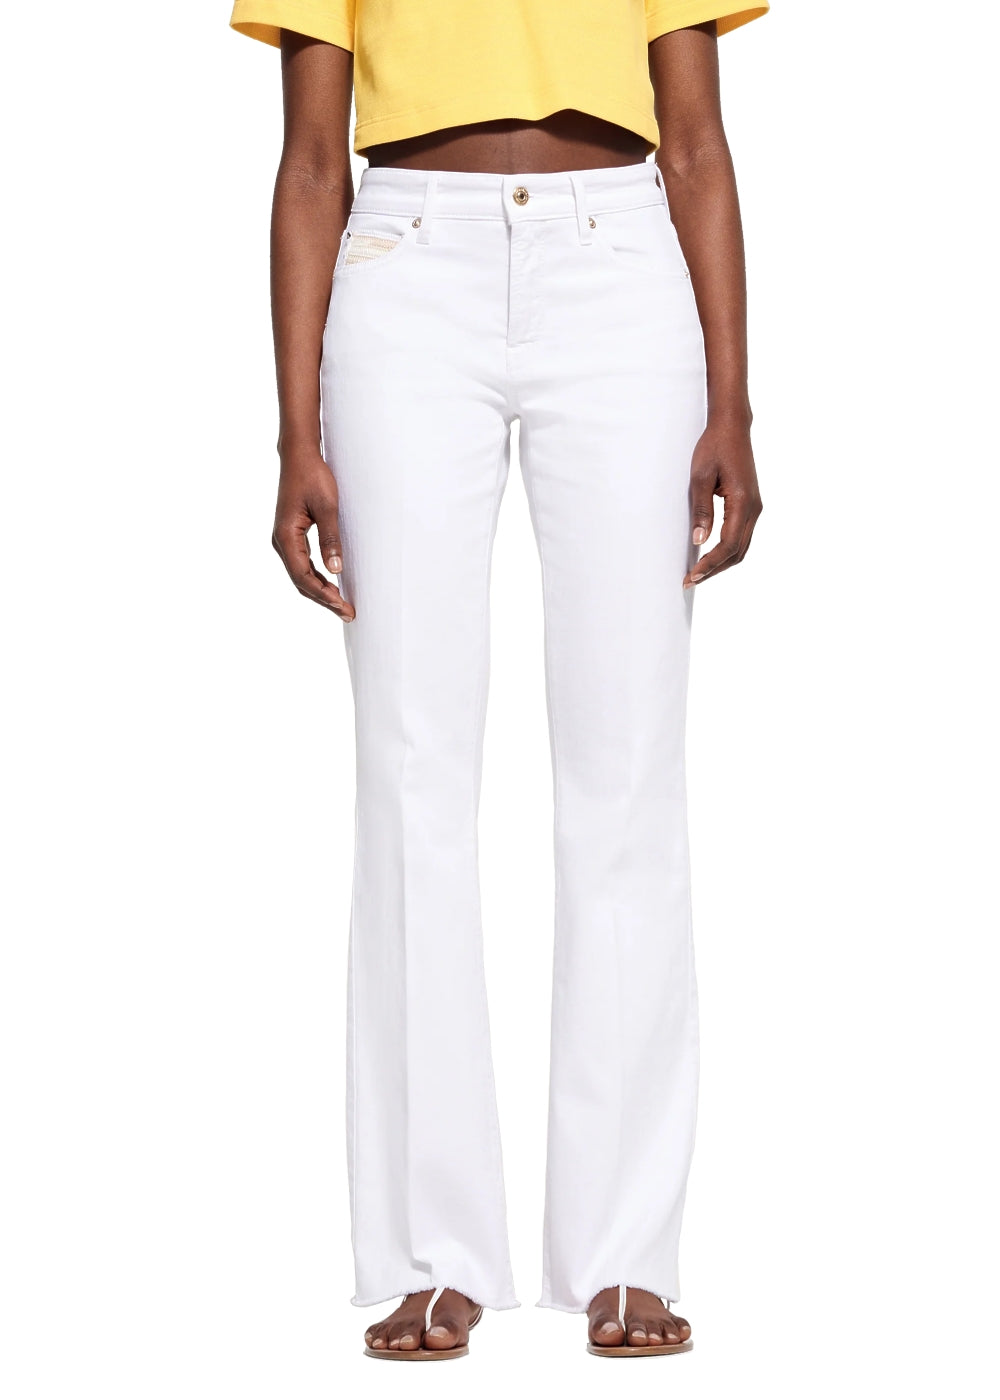 Cambio Jeans Paris flared in weiß. Modische 5-Pocket Hose in weißem Sommerdenim mit weichem Tragekomfort von Cambio online kaufen. Designer Damen Jeans mit modischer Flared Form und offenkantigem Abschluss aus der neuen Cambio Kollektion.